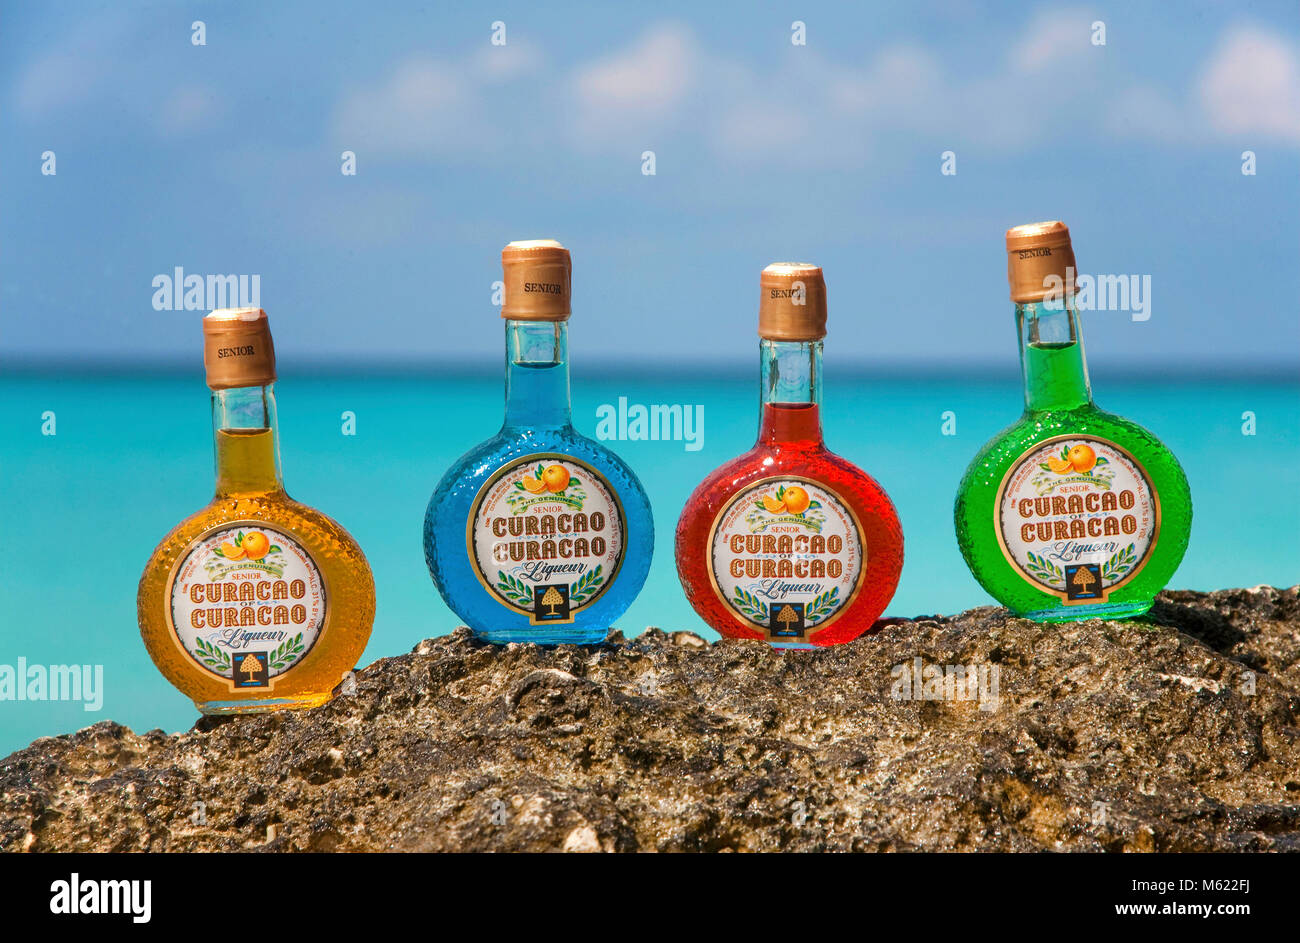 Coloridas botellas de licor y el famoso 'Blue Curacao", licor de Willemstad, Curazao, Antillas Neerlandesas, Caribe, Mar Caribe Foto de stock